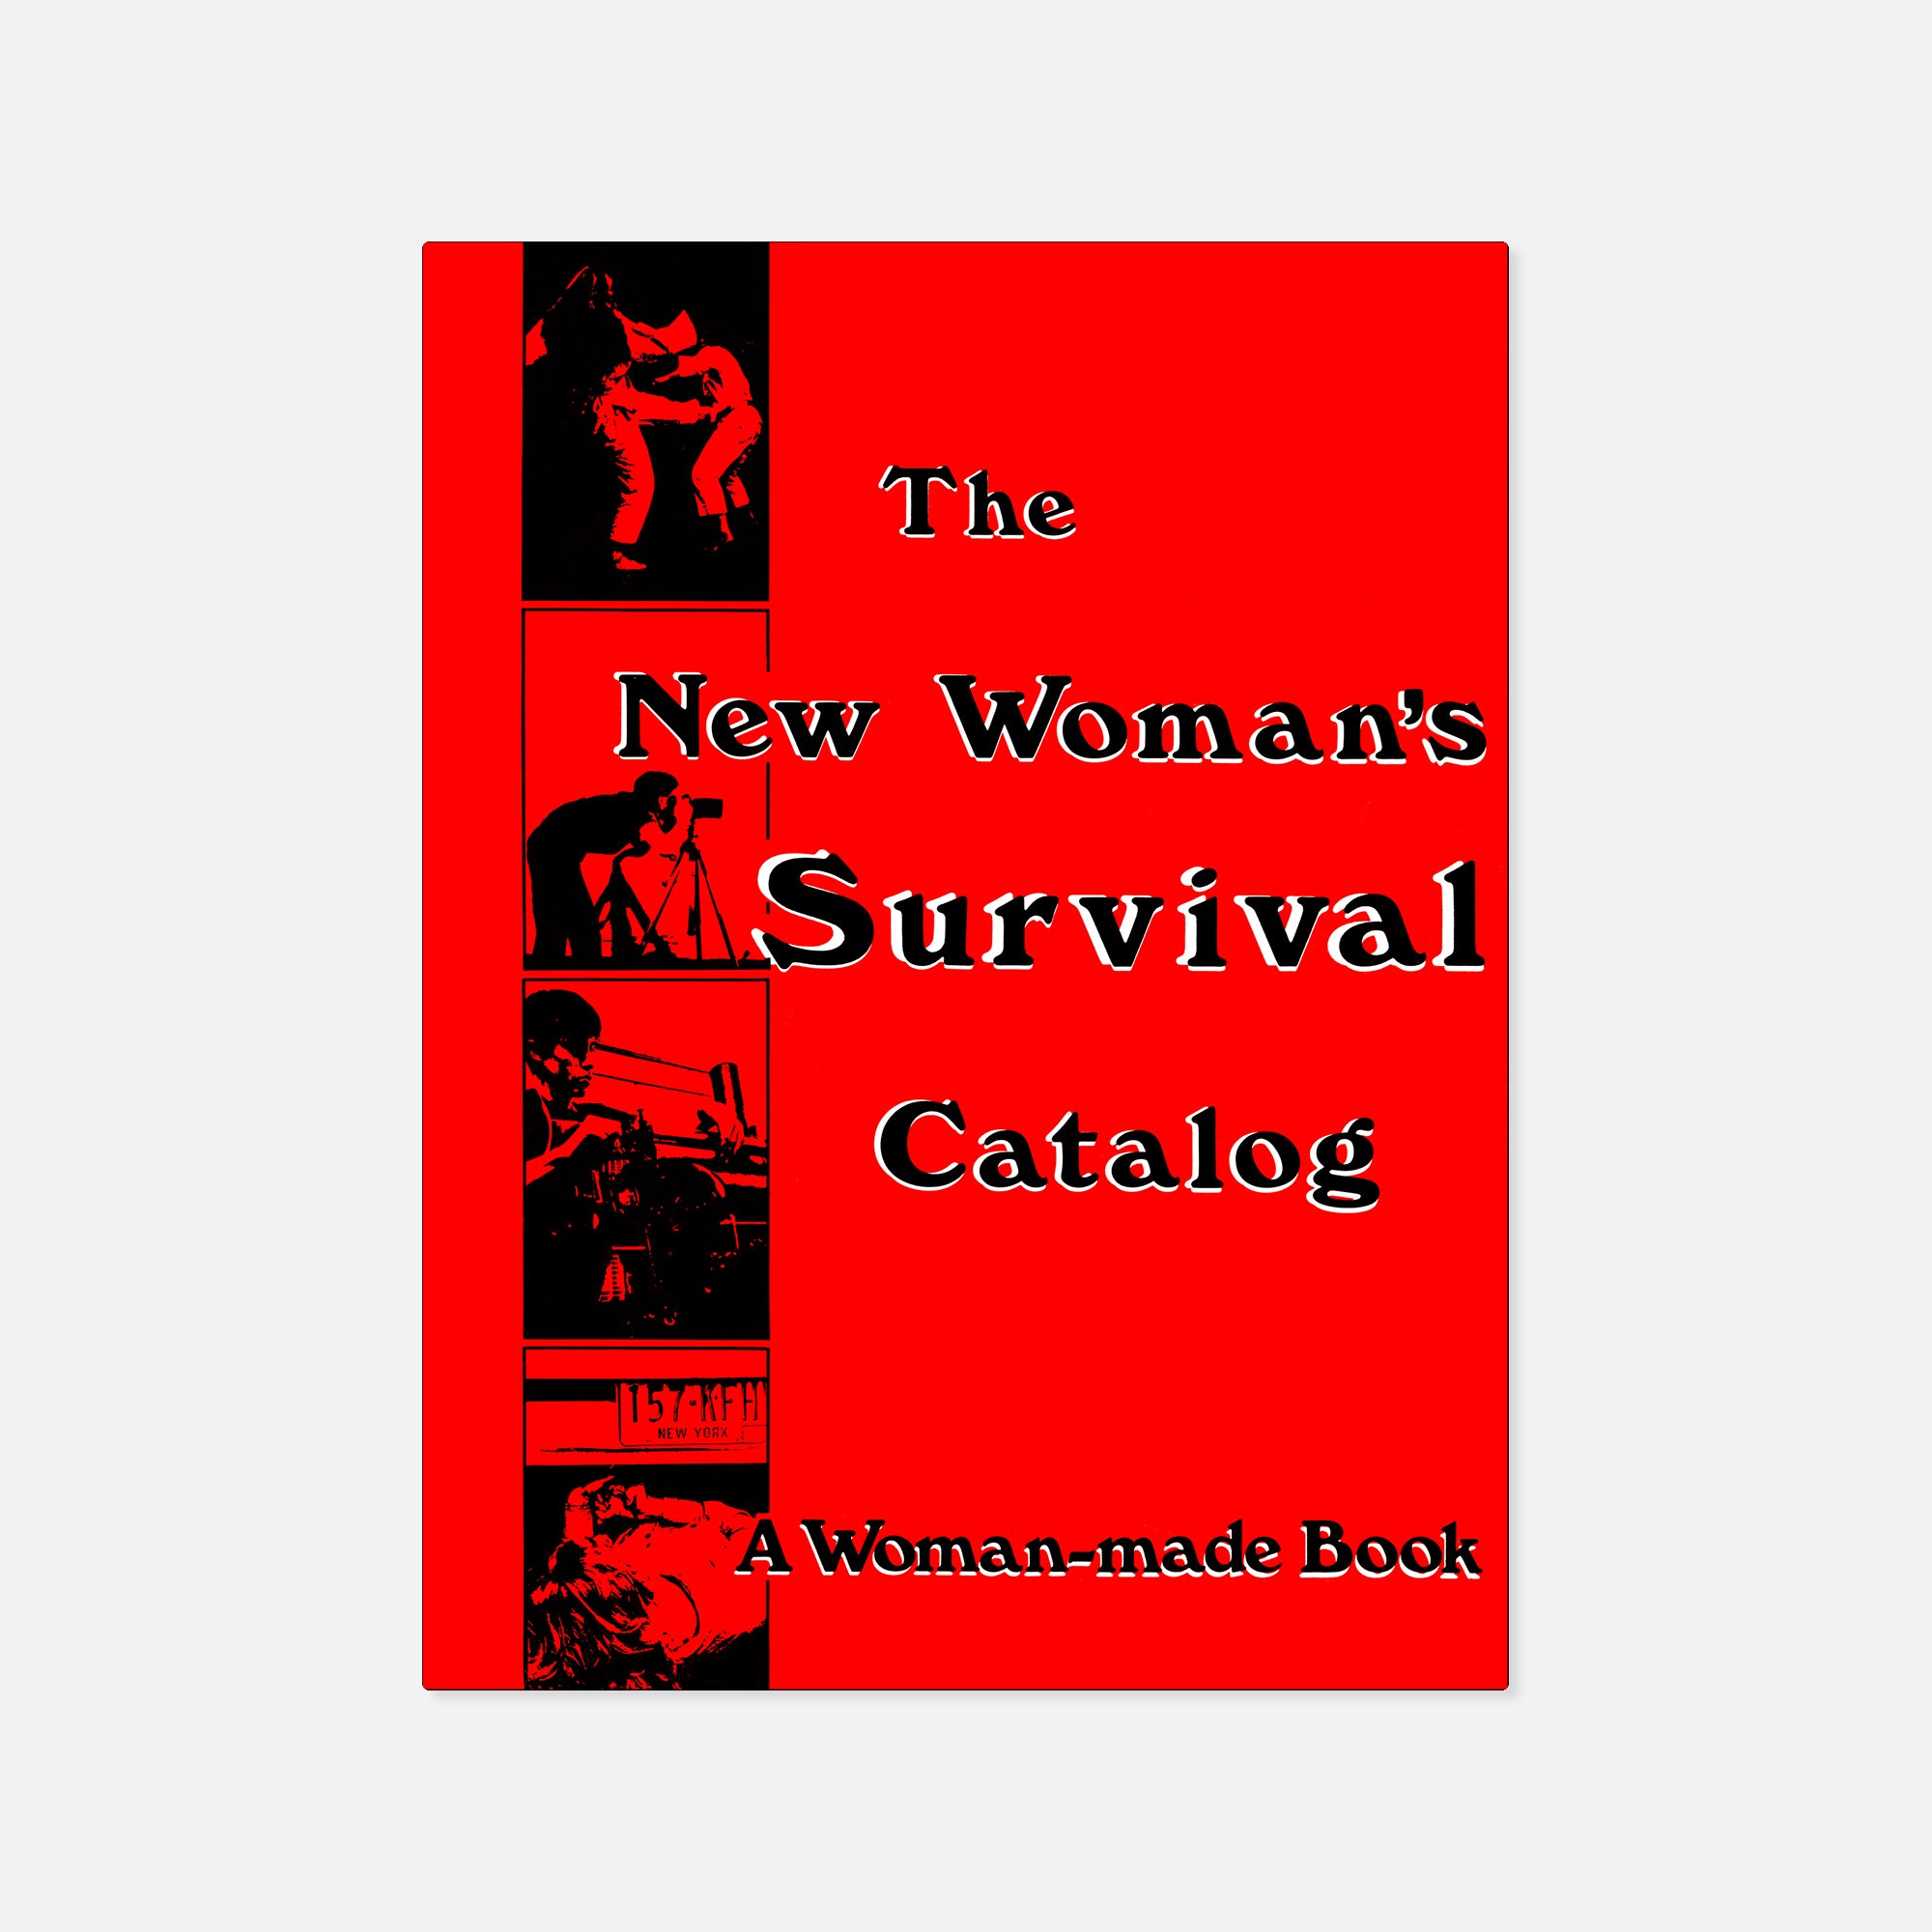 Kirsten Grimstad & Susan Rennie — The New Woman's Survival Catalog